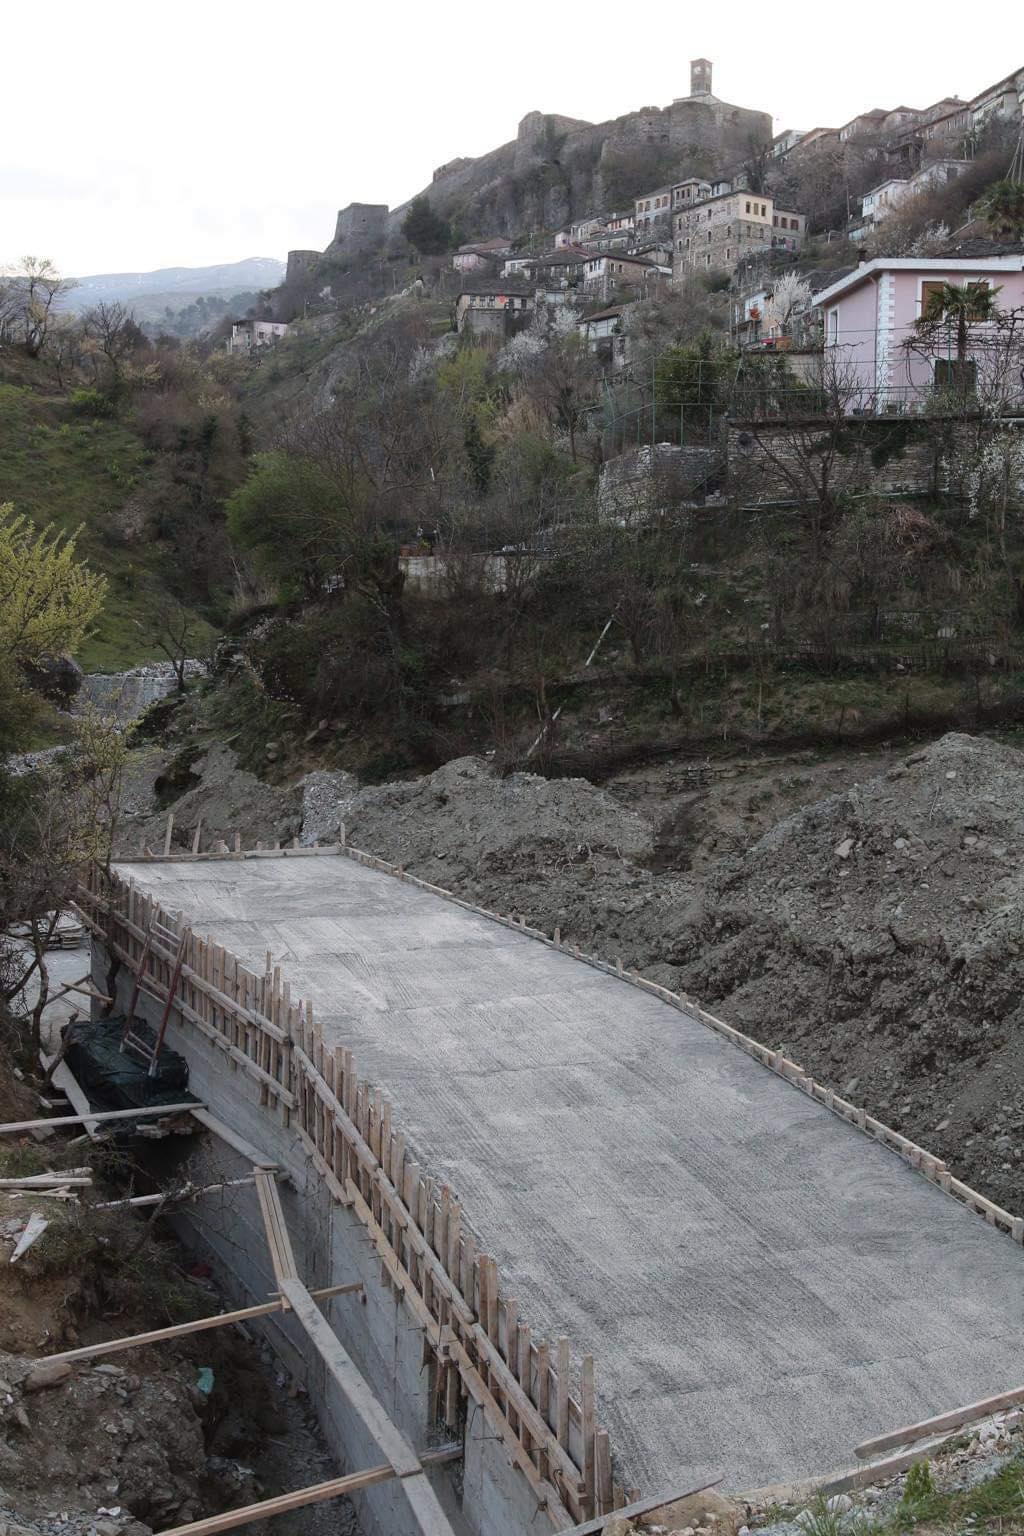 Ndërtimi i Bypass-it pranë kalasë së Gjirokastrës “goditje e rëndë” për Statusin e UNESCO-s